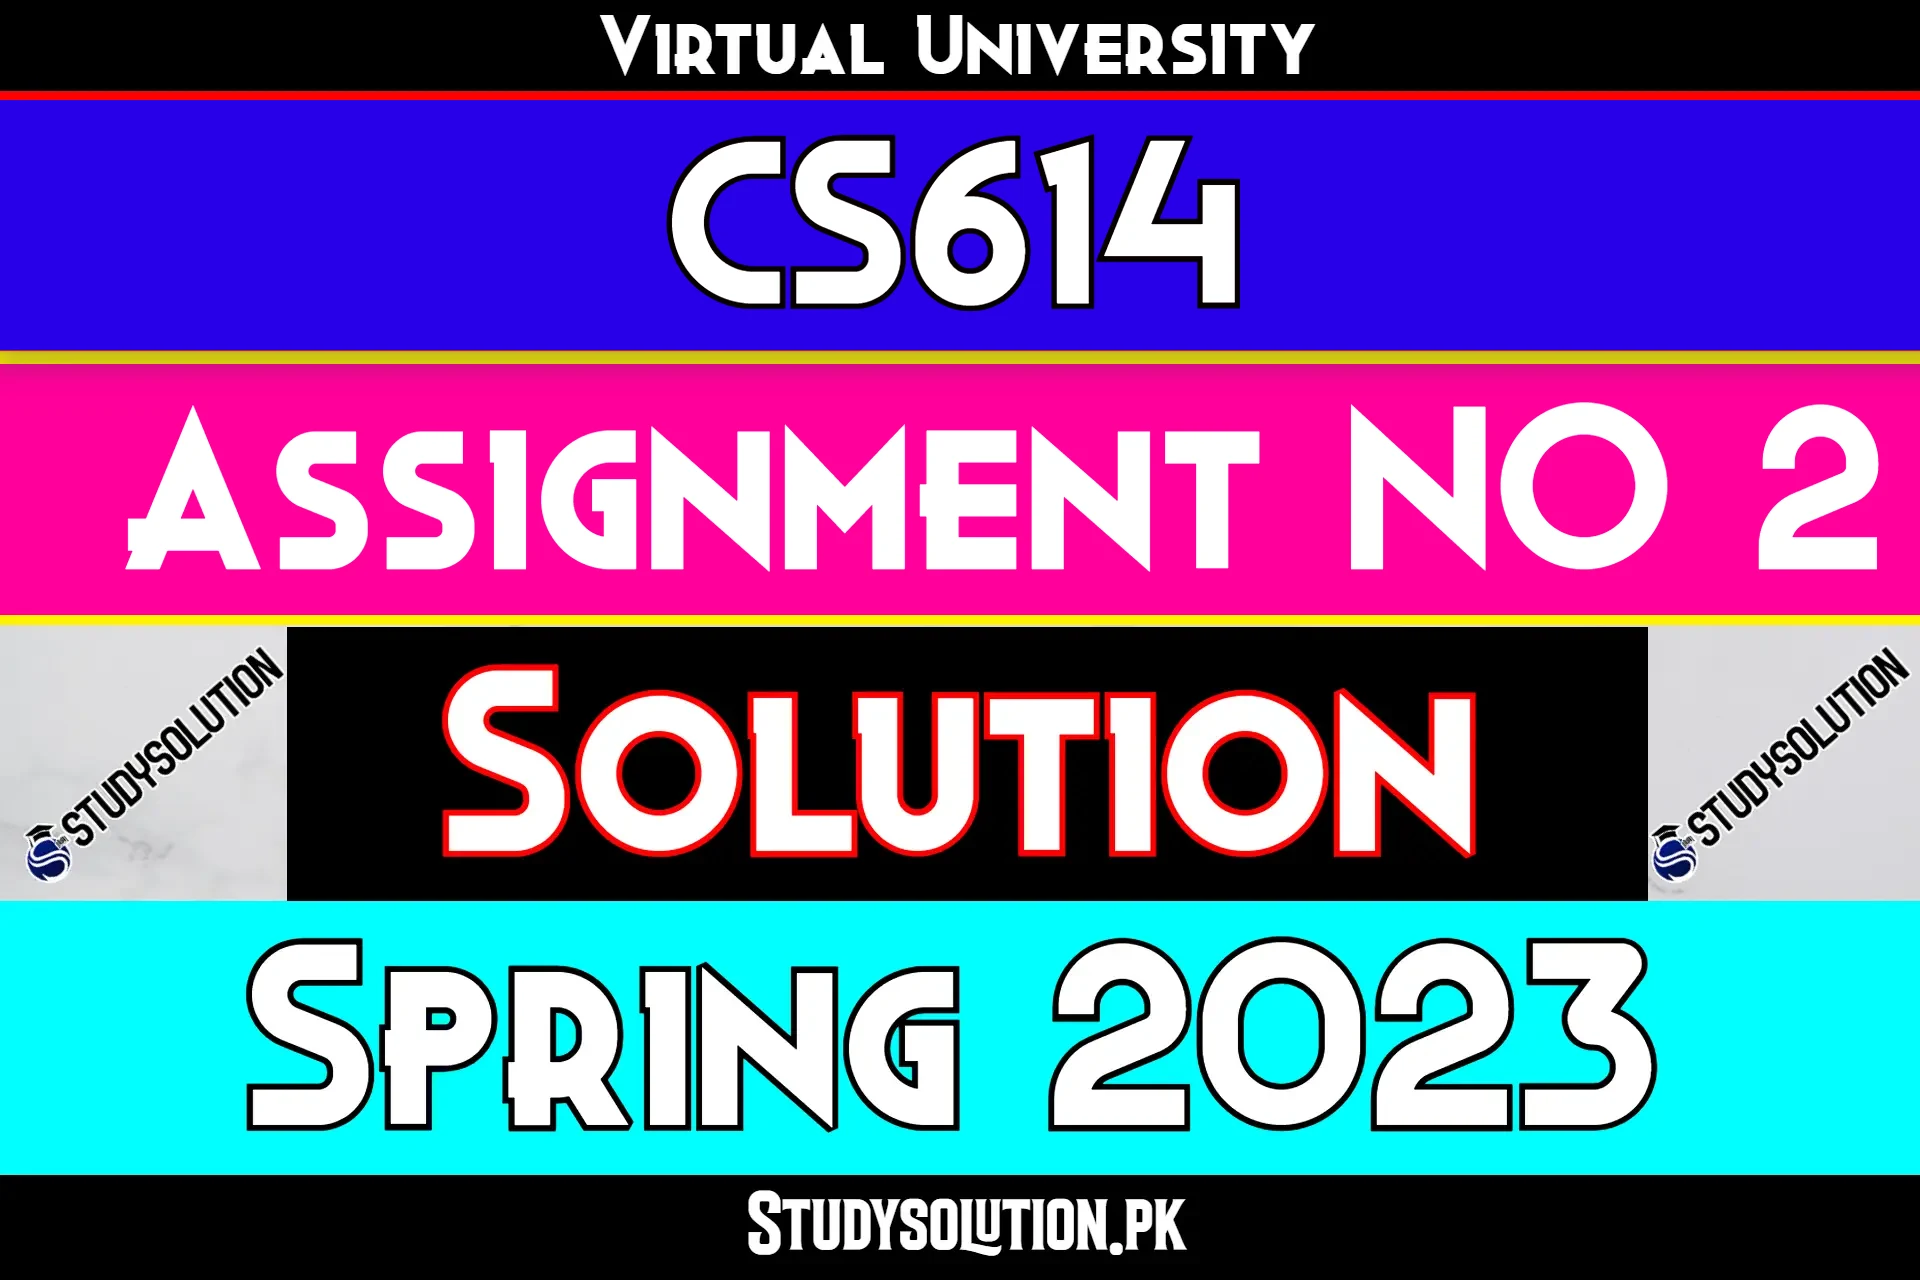 CS614 Assignment No 2 Solution Spring 2023 